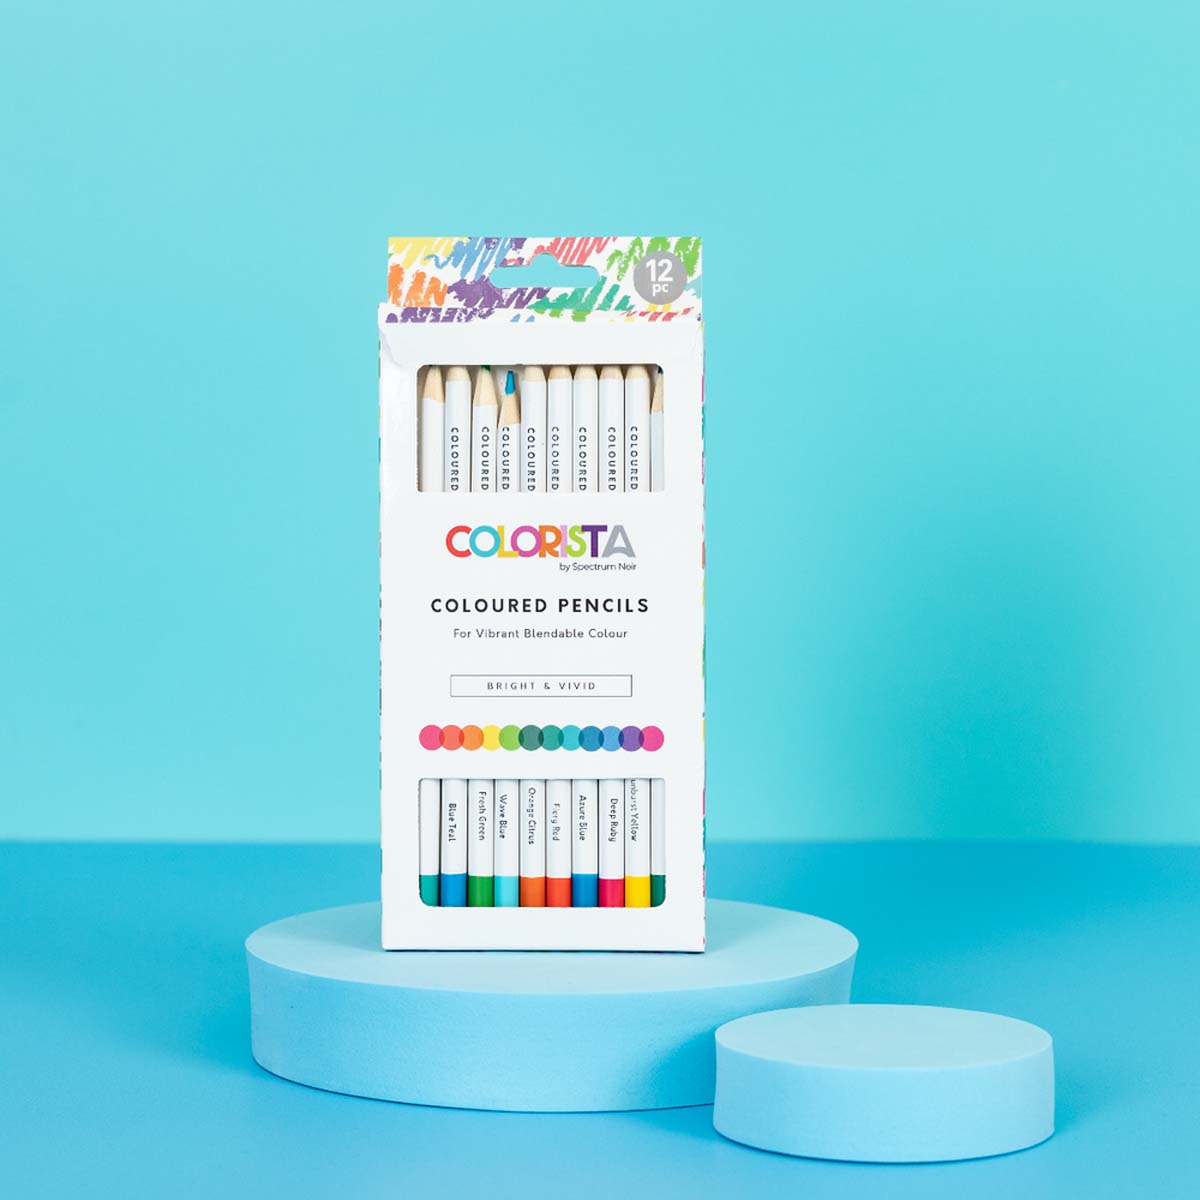 Spectrum Noir Colarista - Crayons de coloriage (12 ensembles) Bright & Vivid